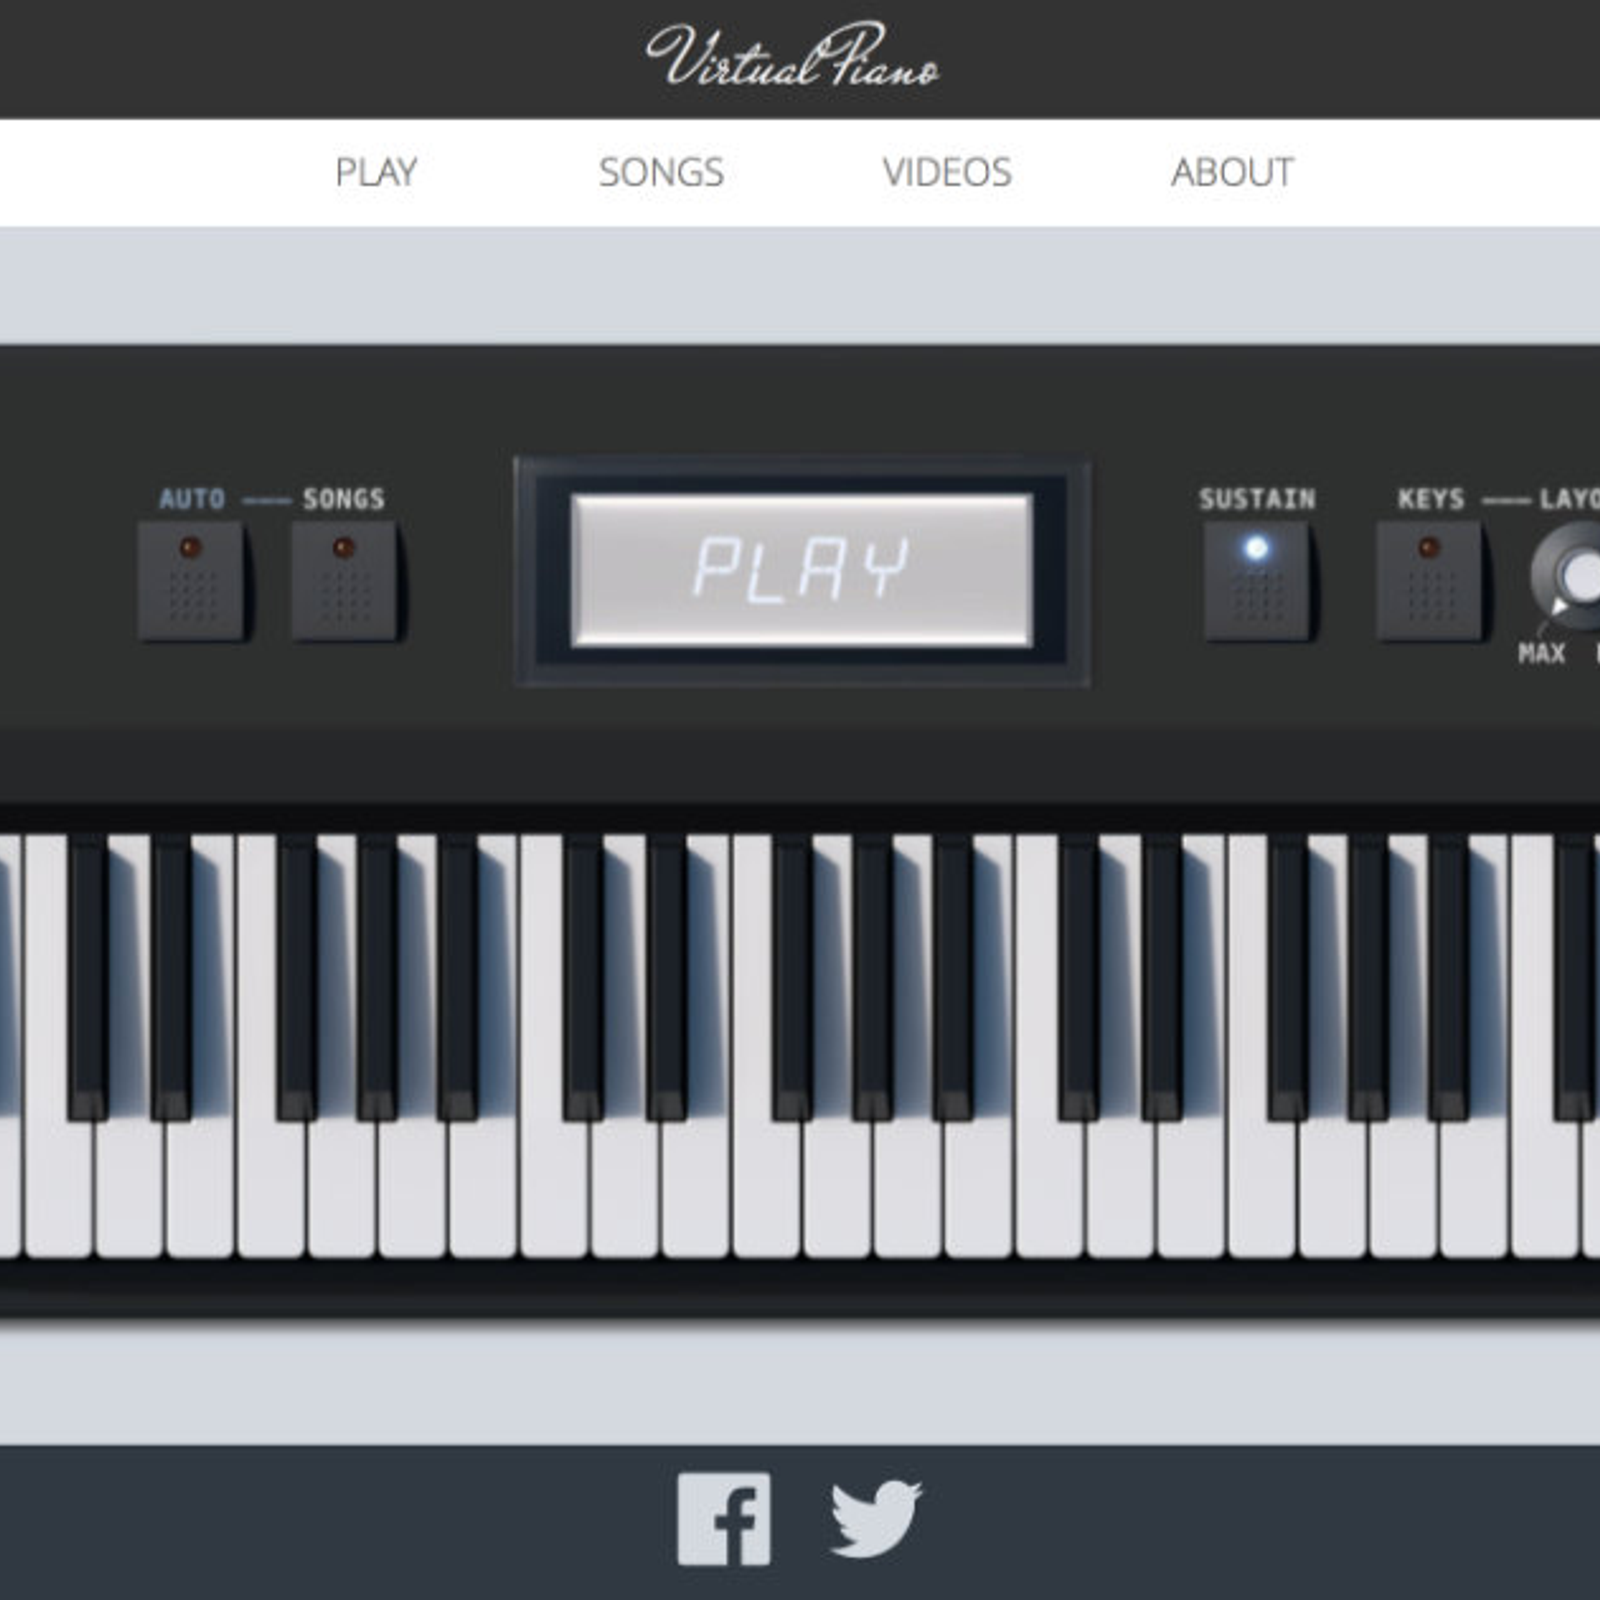 Roblox Piano Player Download Free Roblox Accounts 2019 Obc - marshmello alone roblox piano